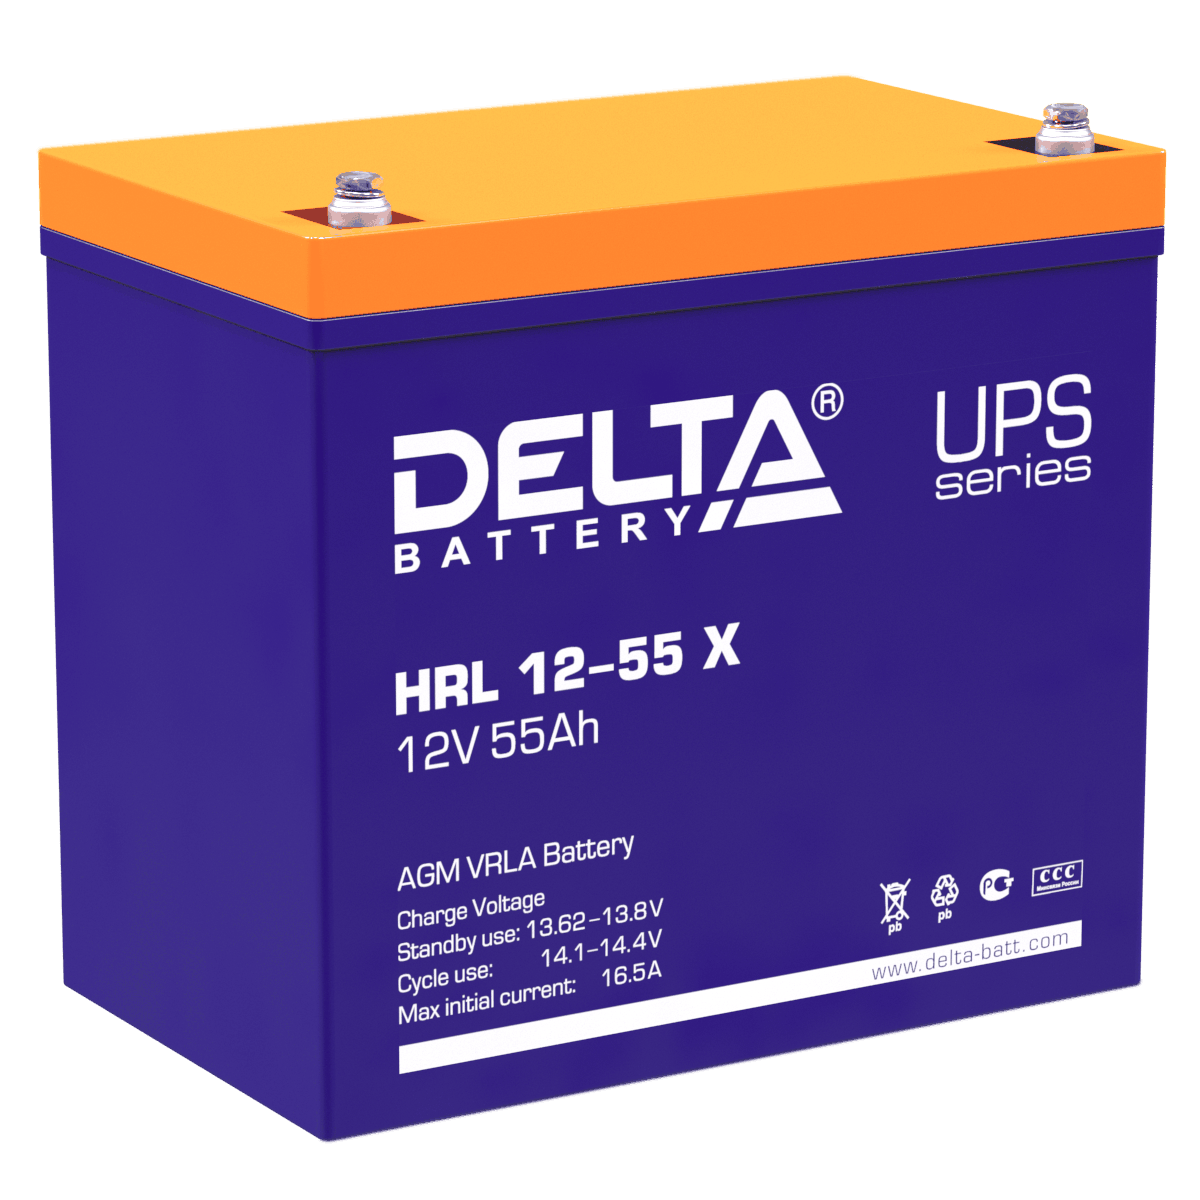 Все Батареи DELTA HRL 12-55 X видеонаблюдения в магазине Vidos Group